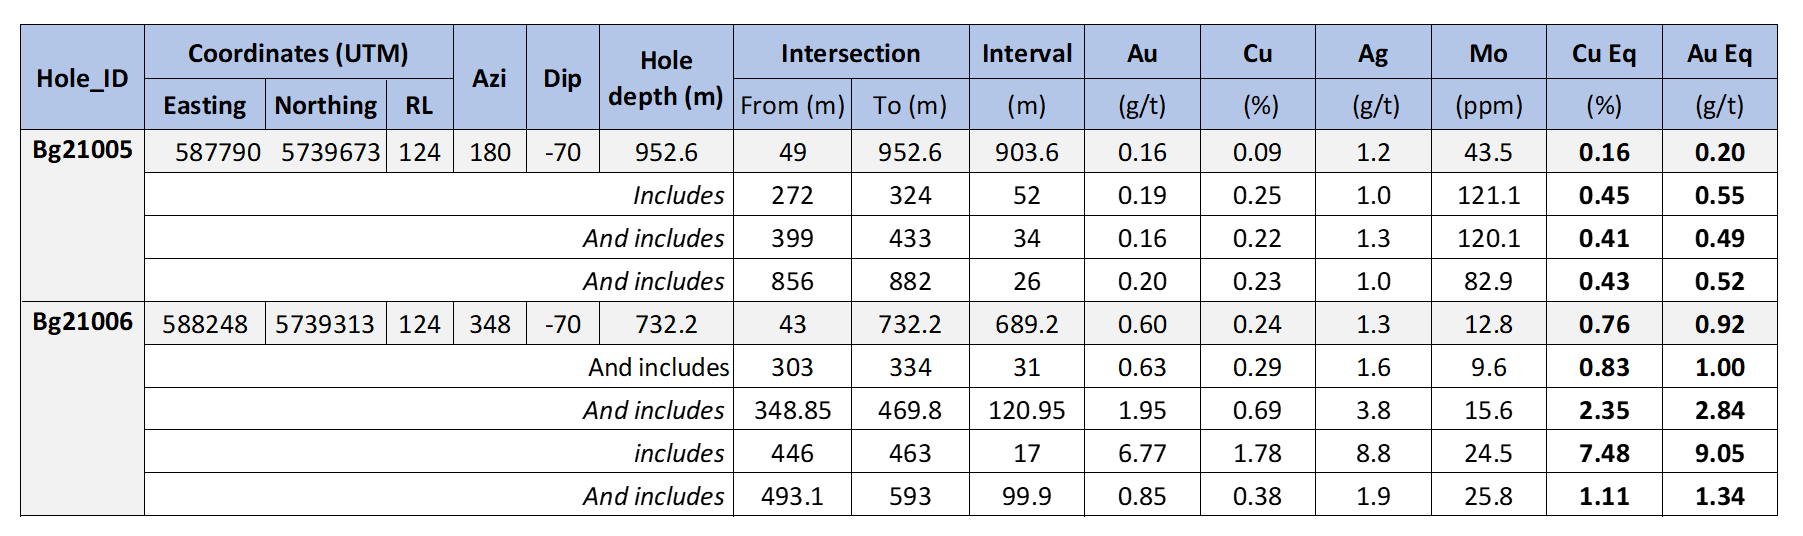 Summary table for holes Bg21005 and Bg21006.